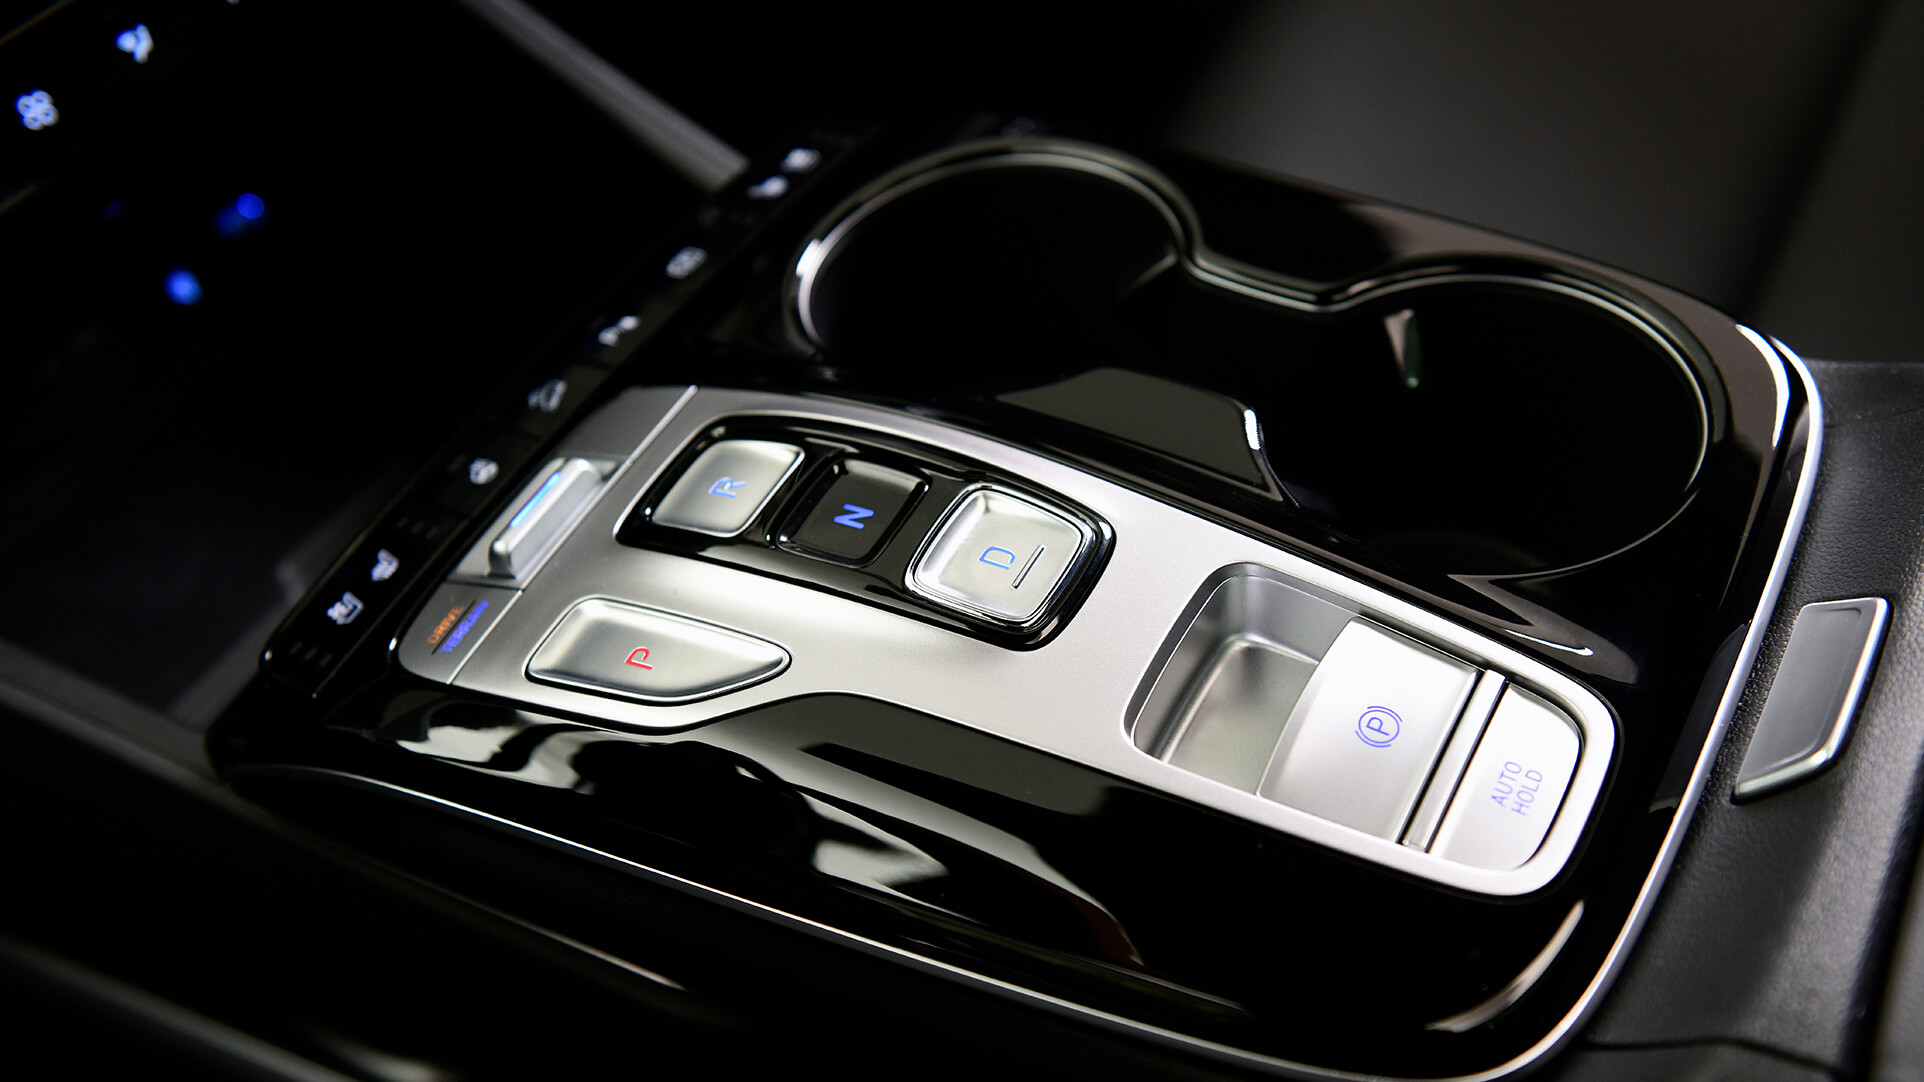 Detaií elektronického řazení v interiéru zcela nového kompaktního SUV Hyundai Tucson.